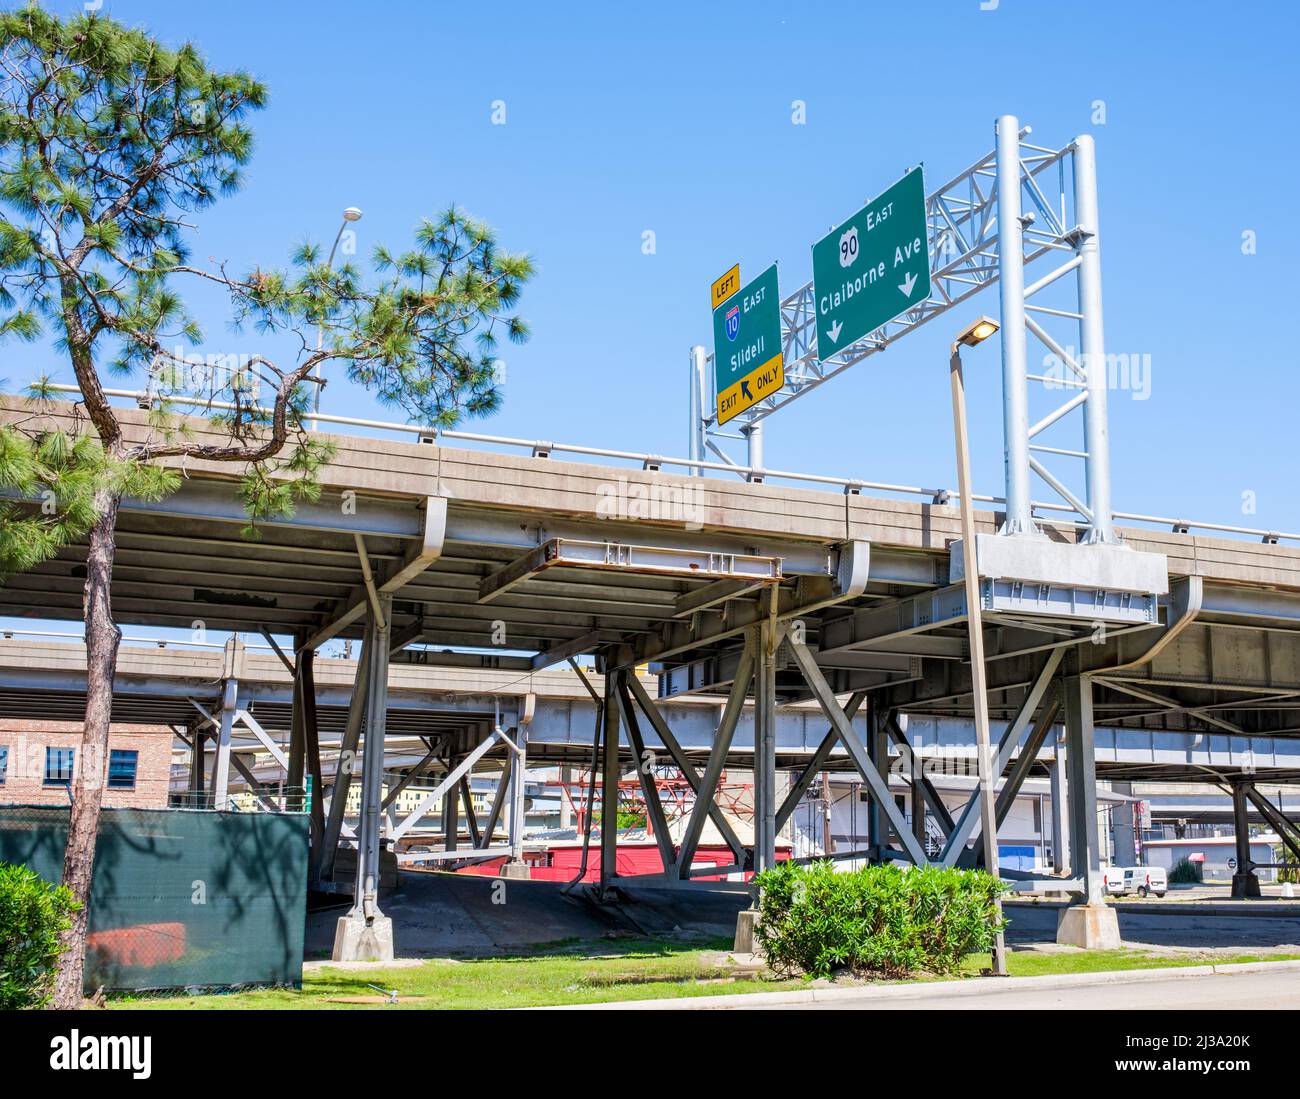 NEW ORLEANS, LA, USA - 3 APRILE 2022: Autostrada sopraelevata su Claiborne Avenue con indicazioni stradali per Claiborne Avenue e le uscite di Sidell Foto Stock